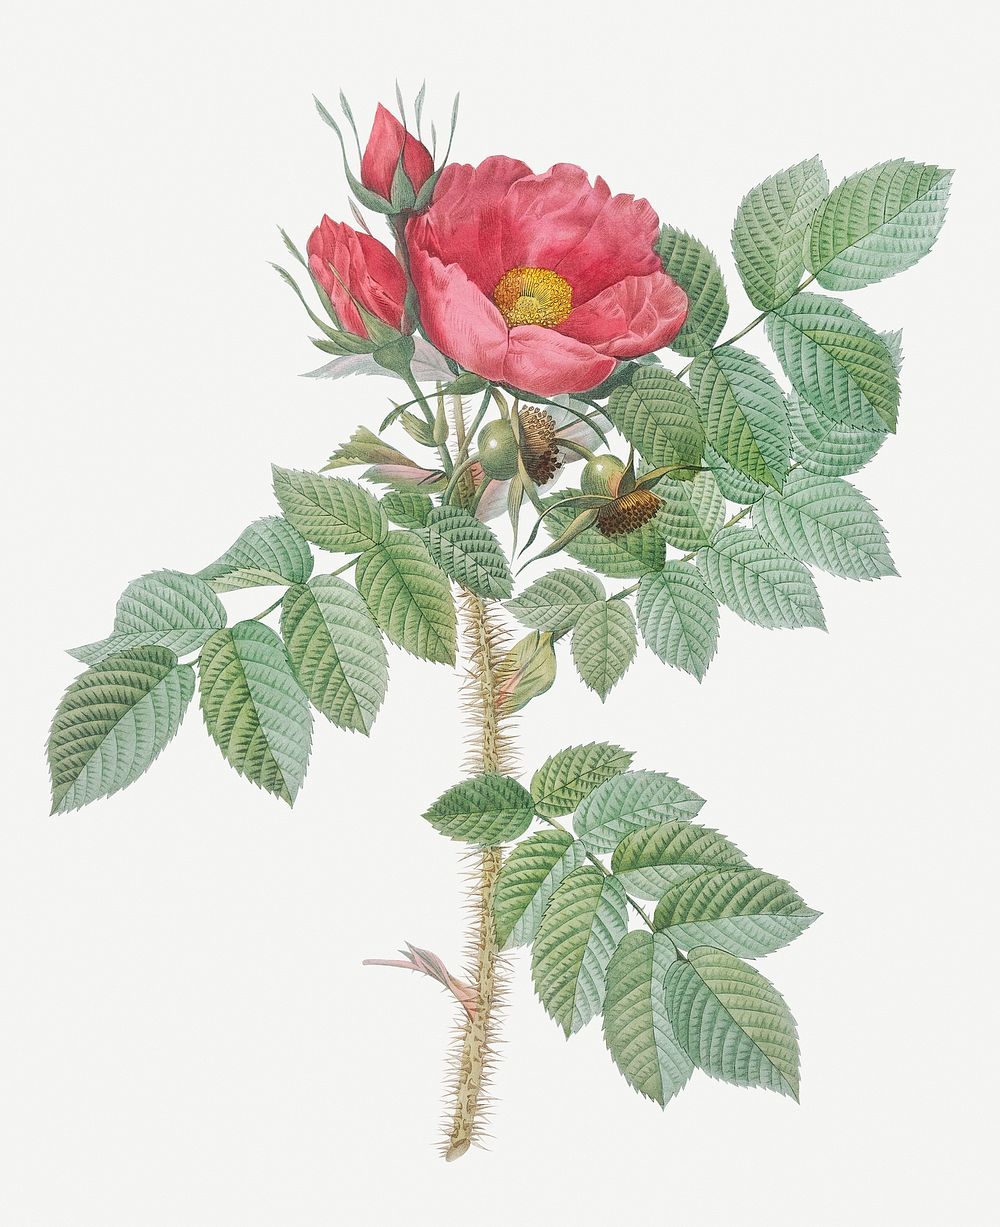 Vintage blooming Kamtschatka rose illustration